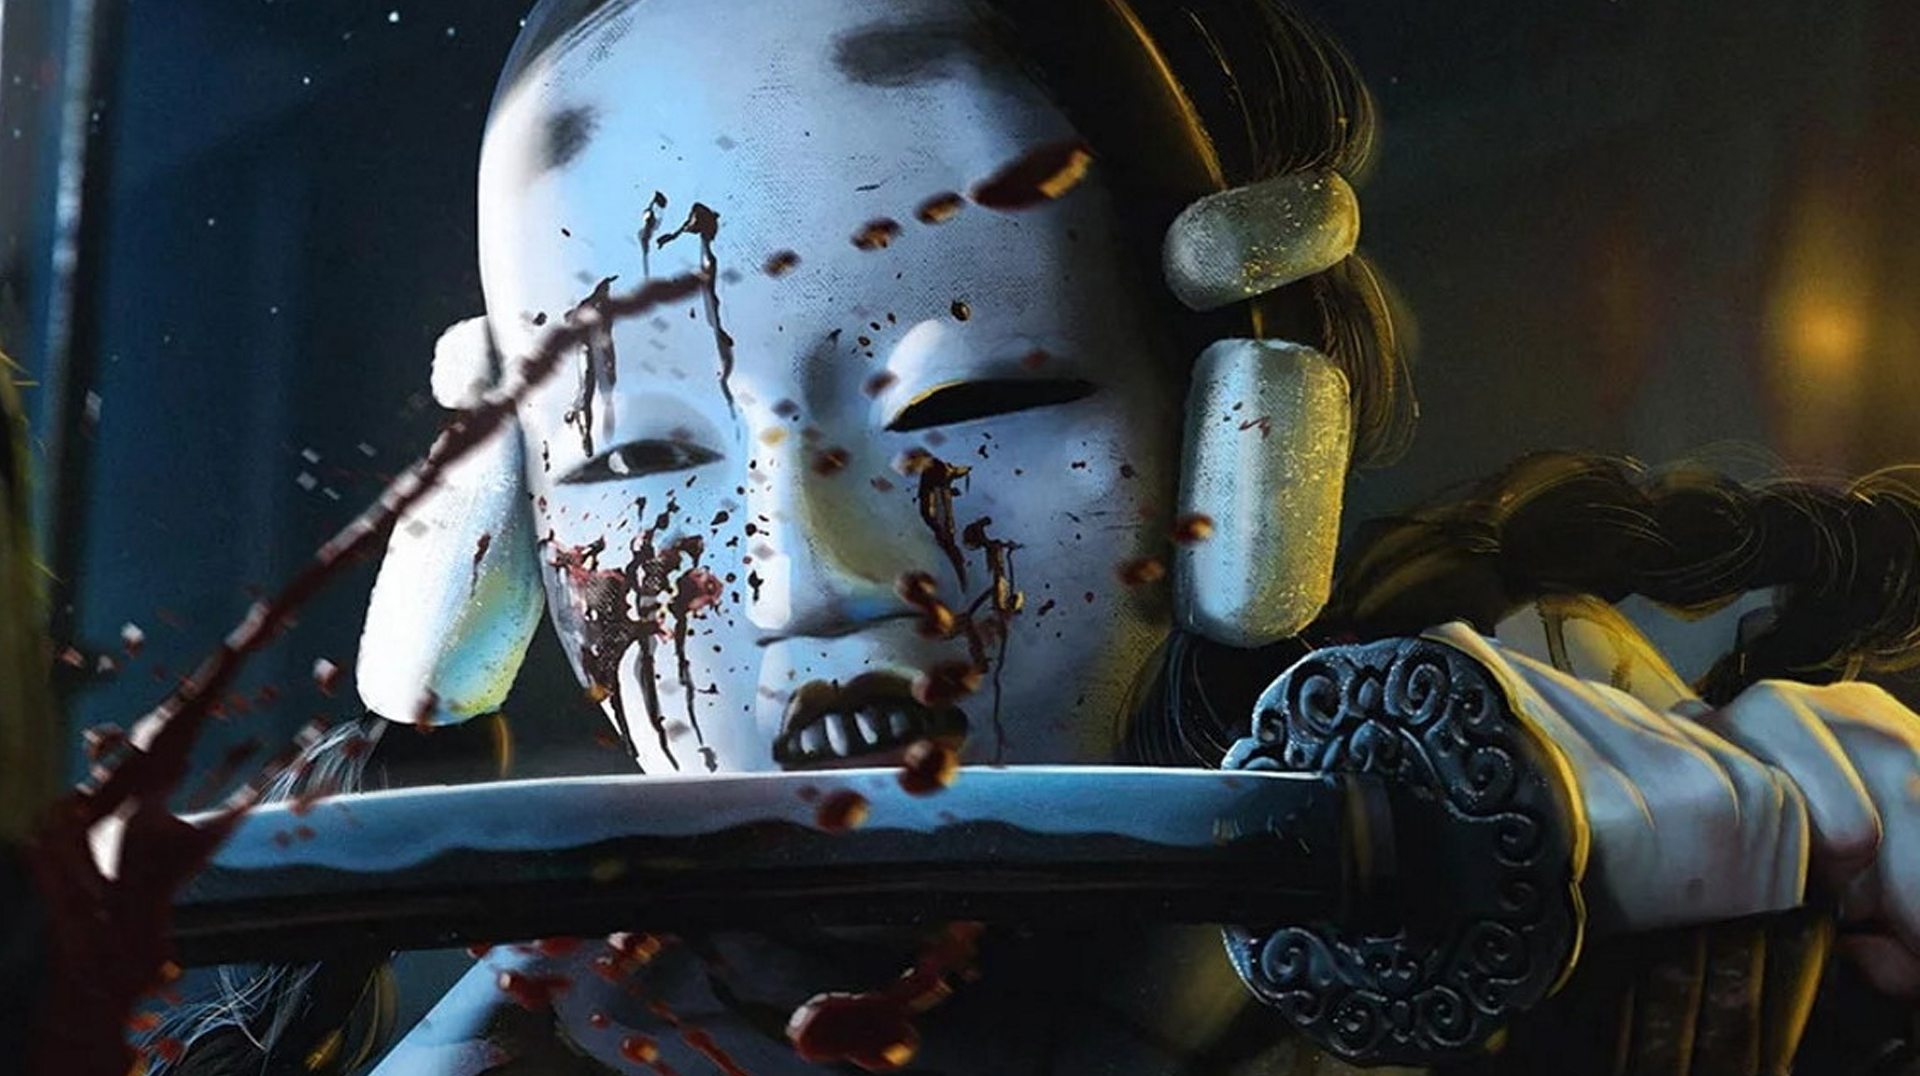 Witcher 3 devs' new game sounds like Destiny 2 with ninjas